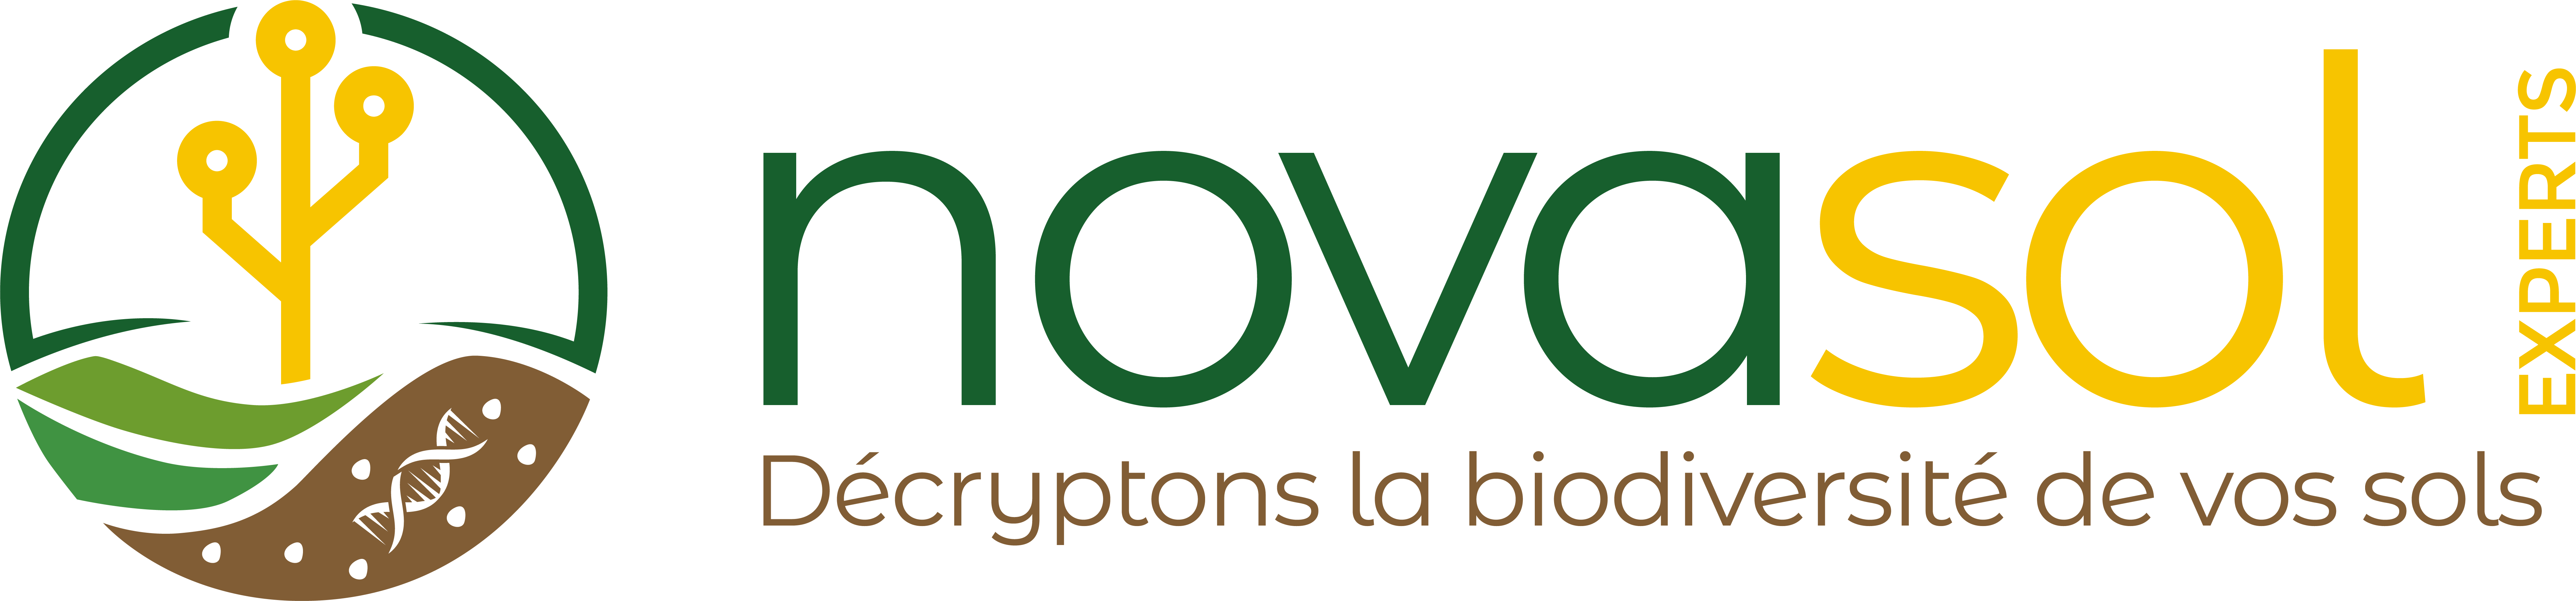 Logo Novasol